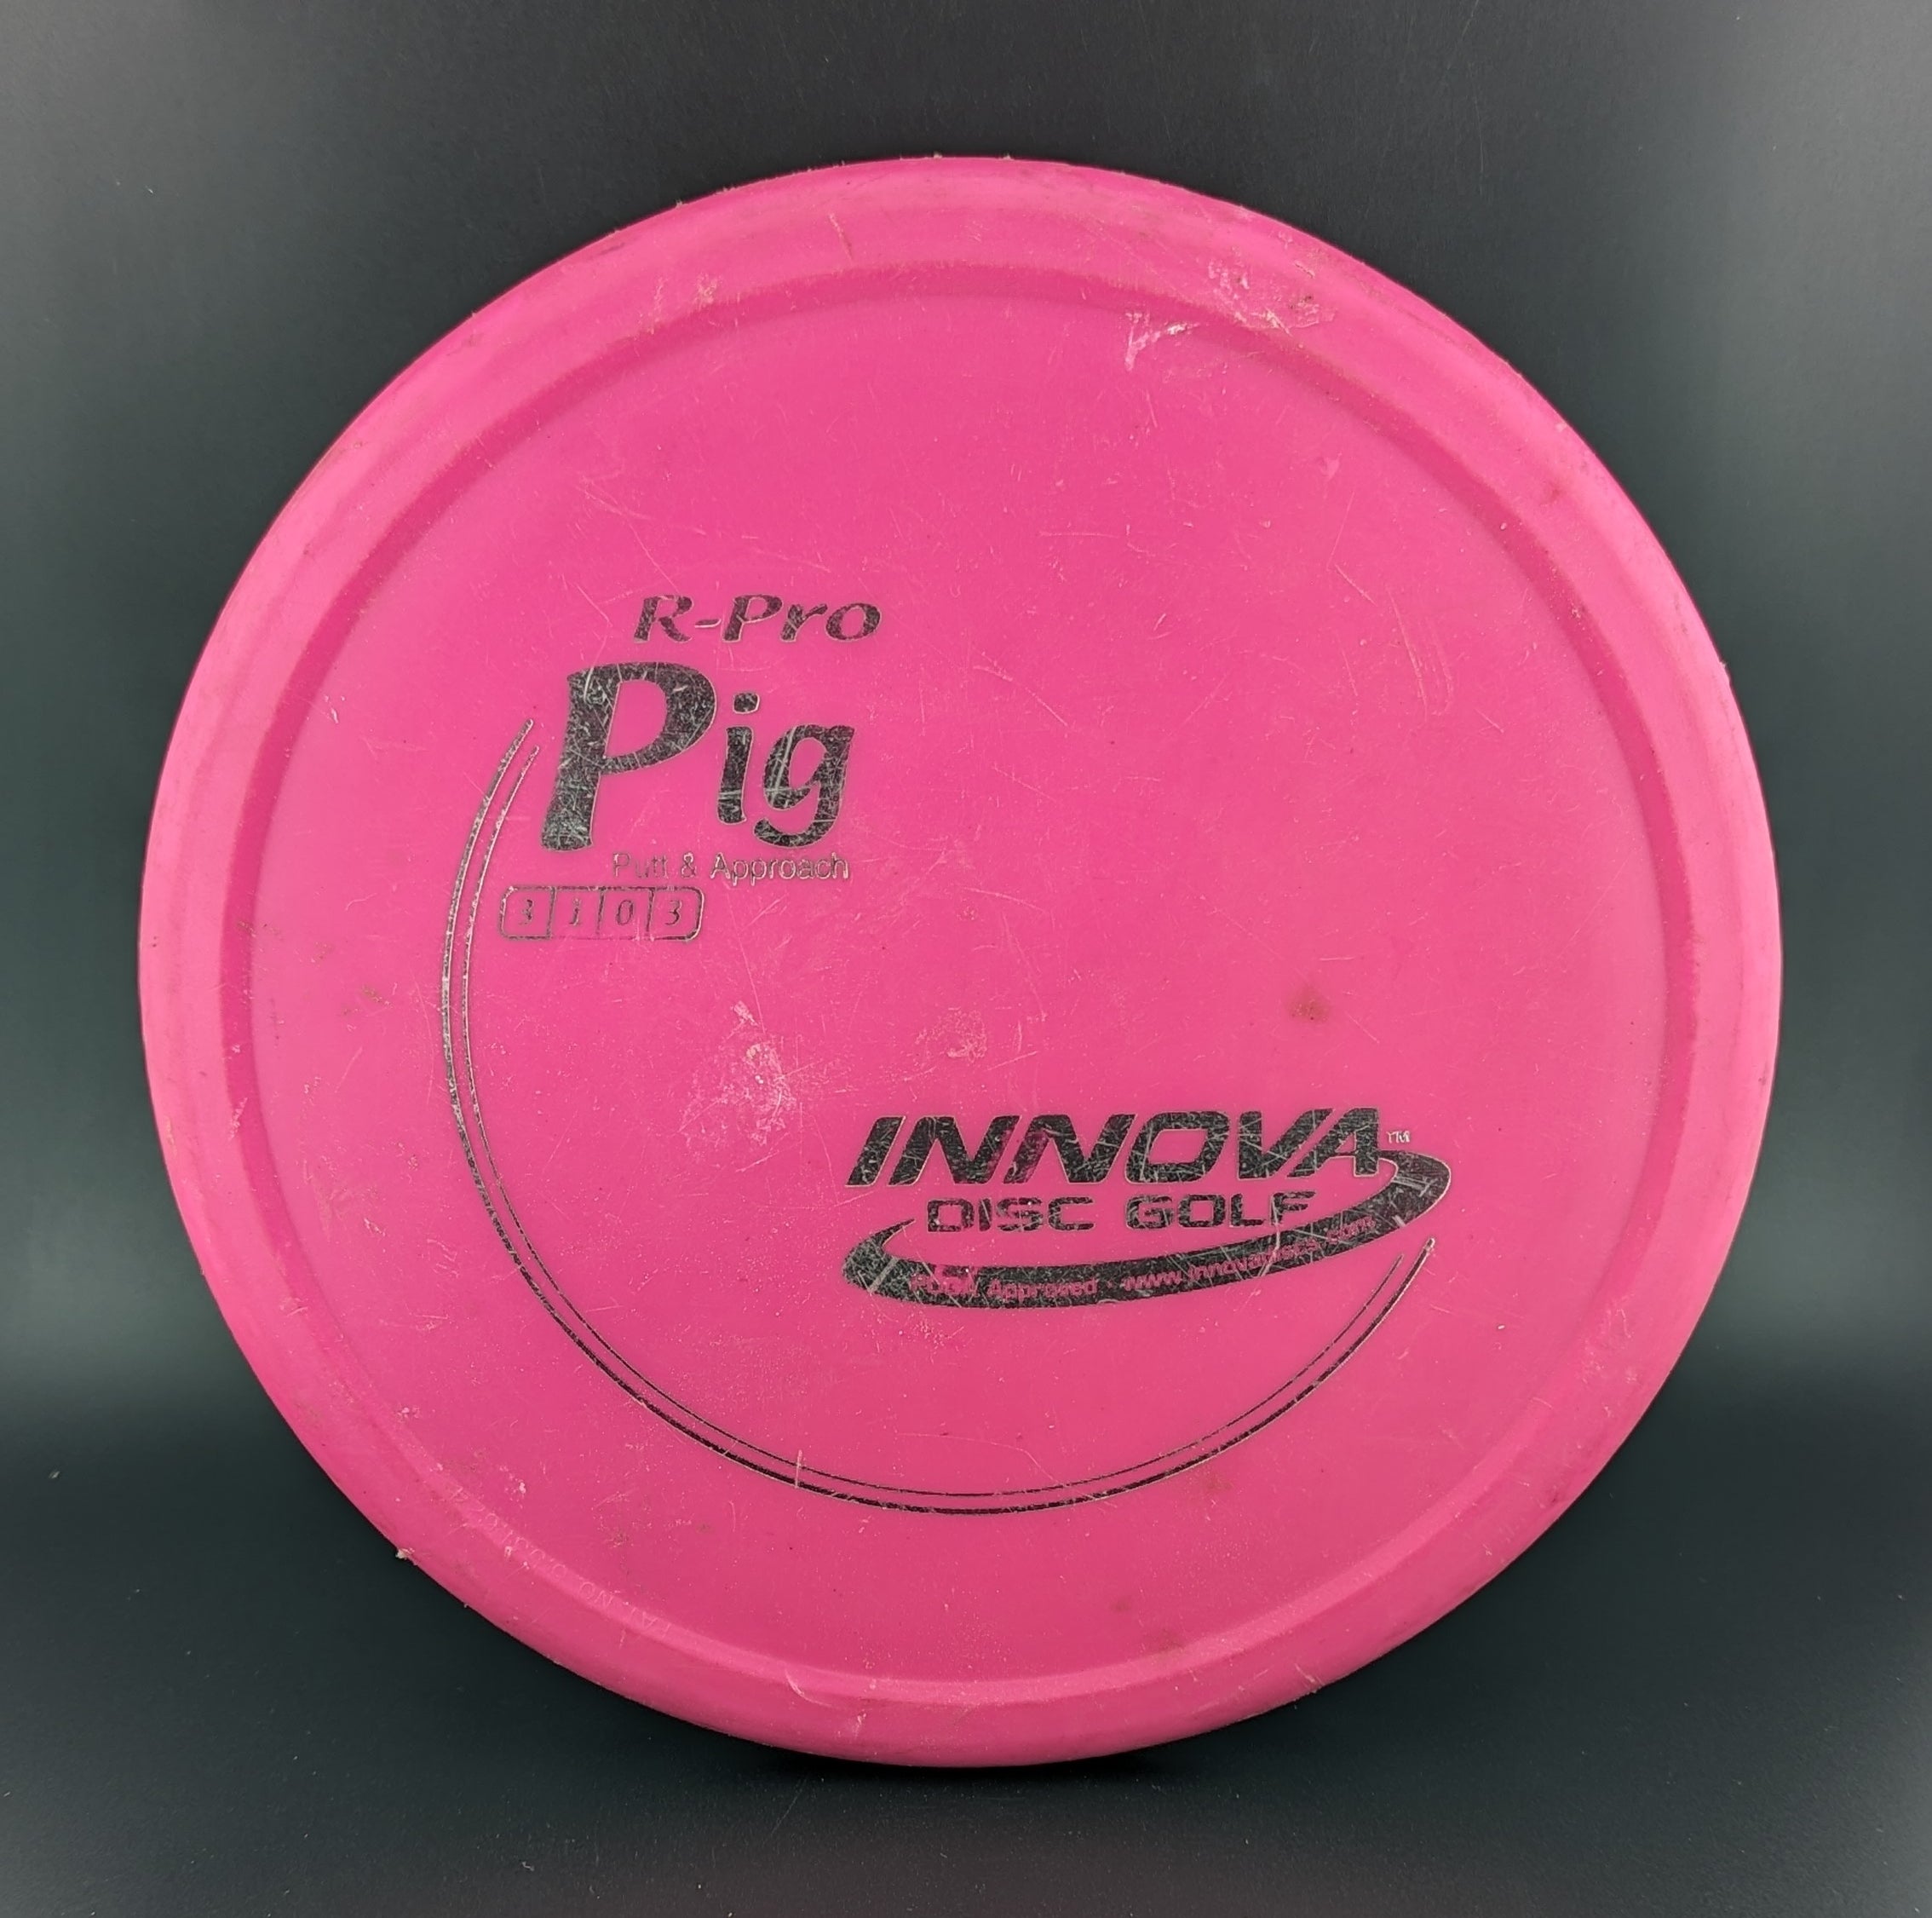 Innova R-Pro Pig Used (7/10) 175g